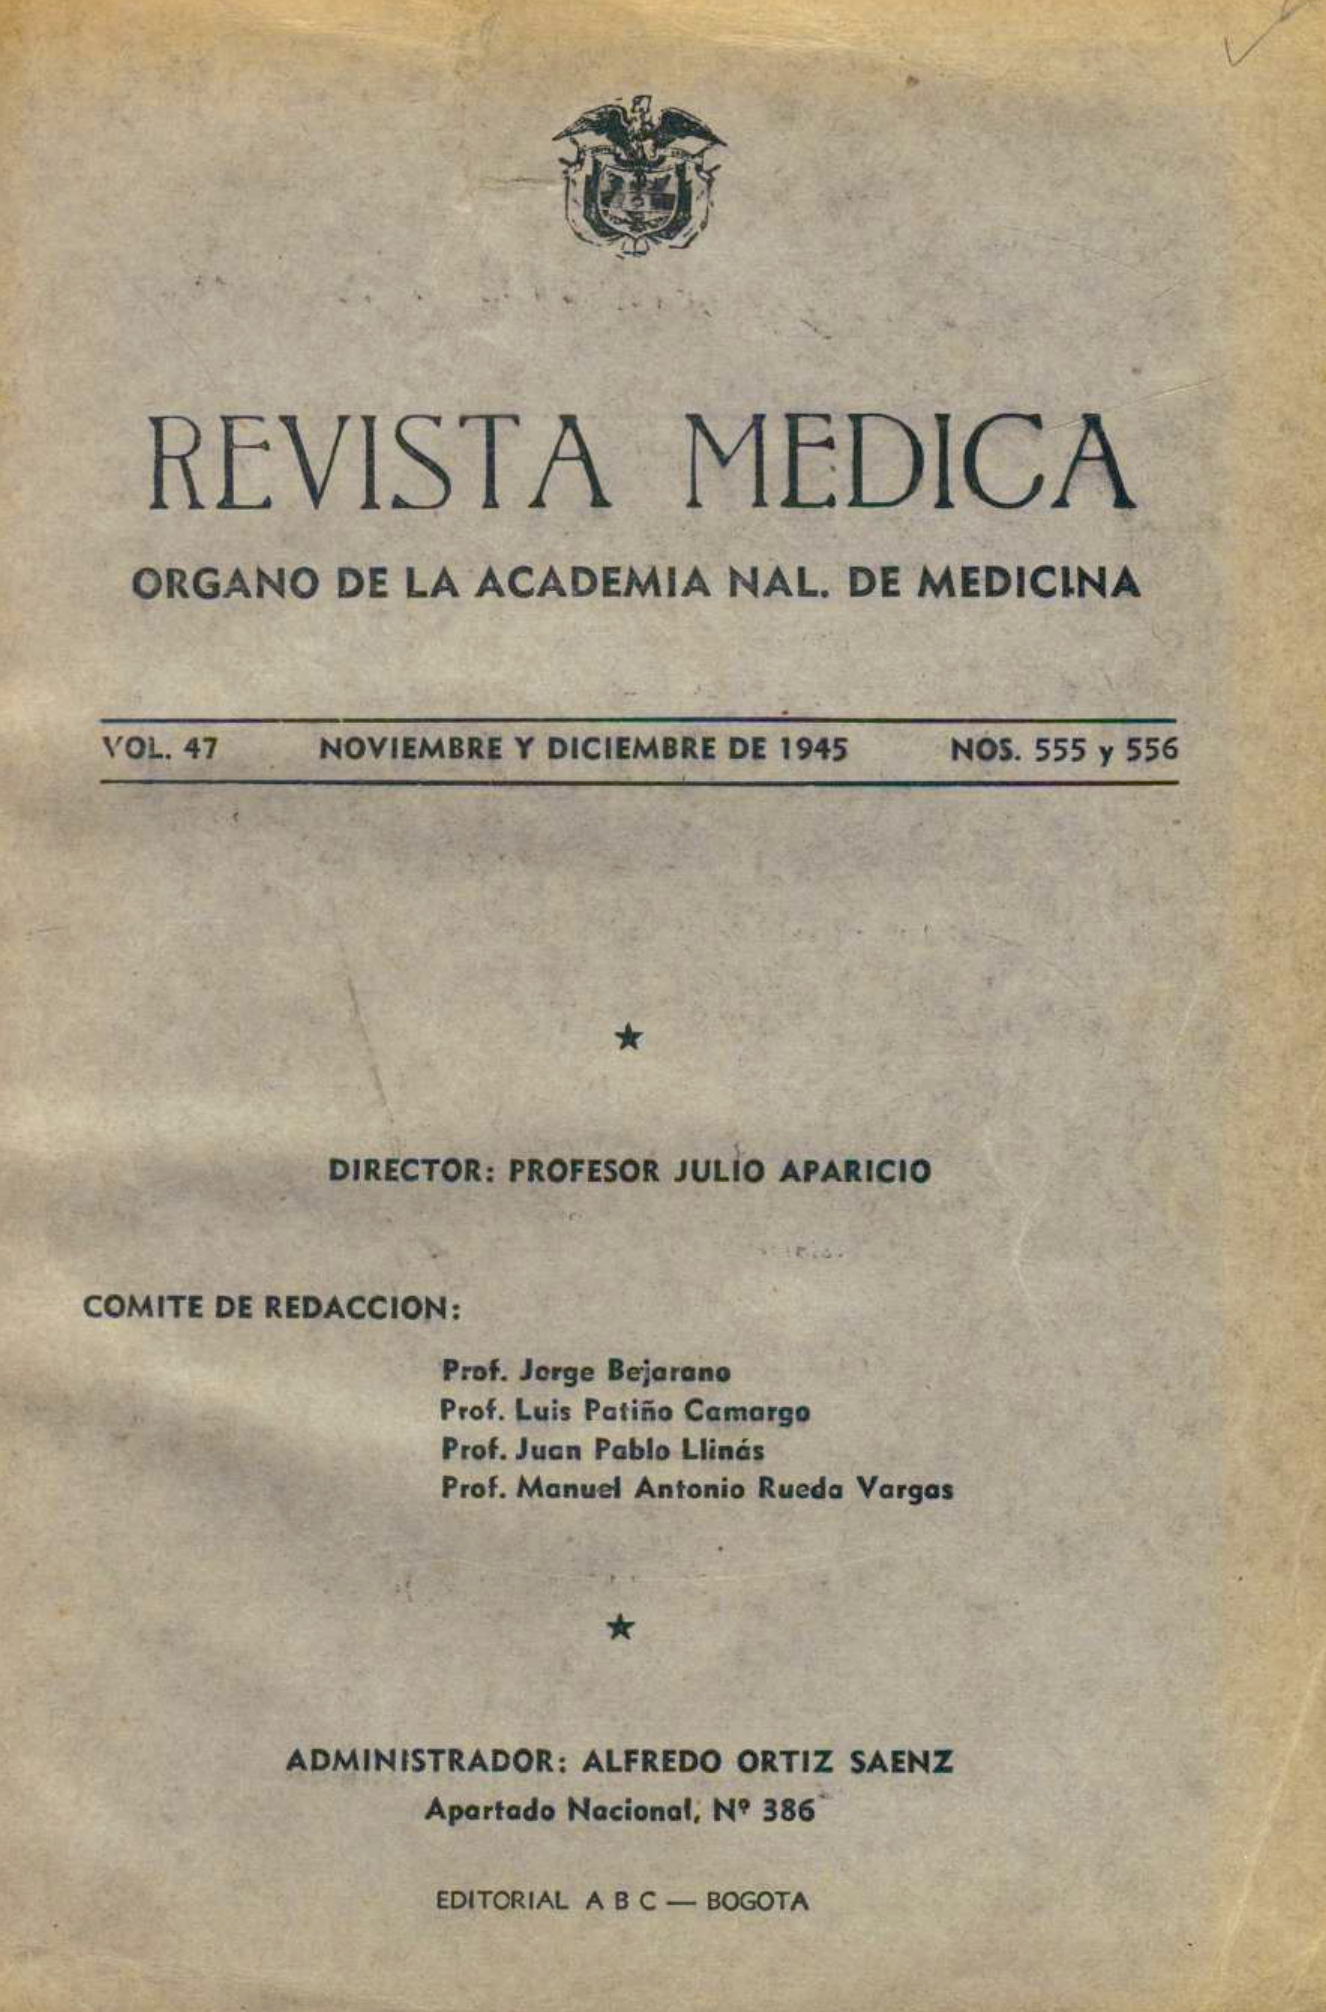 					Ver Vol. 47 Núm. 555-556 (1945): Vol. 47 Núm. 555-556 (1945): Revista Médica. Noviembre y Diciembre de 1945
				